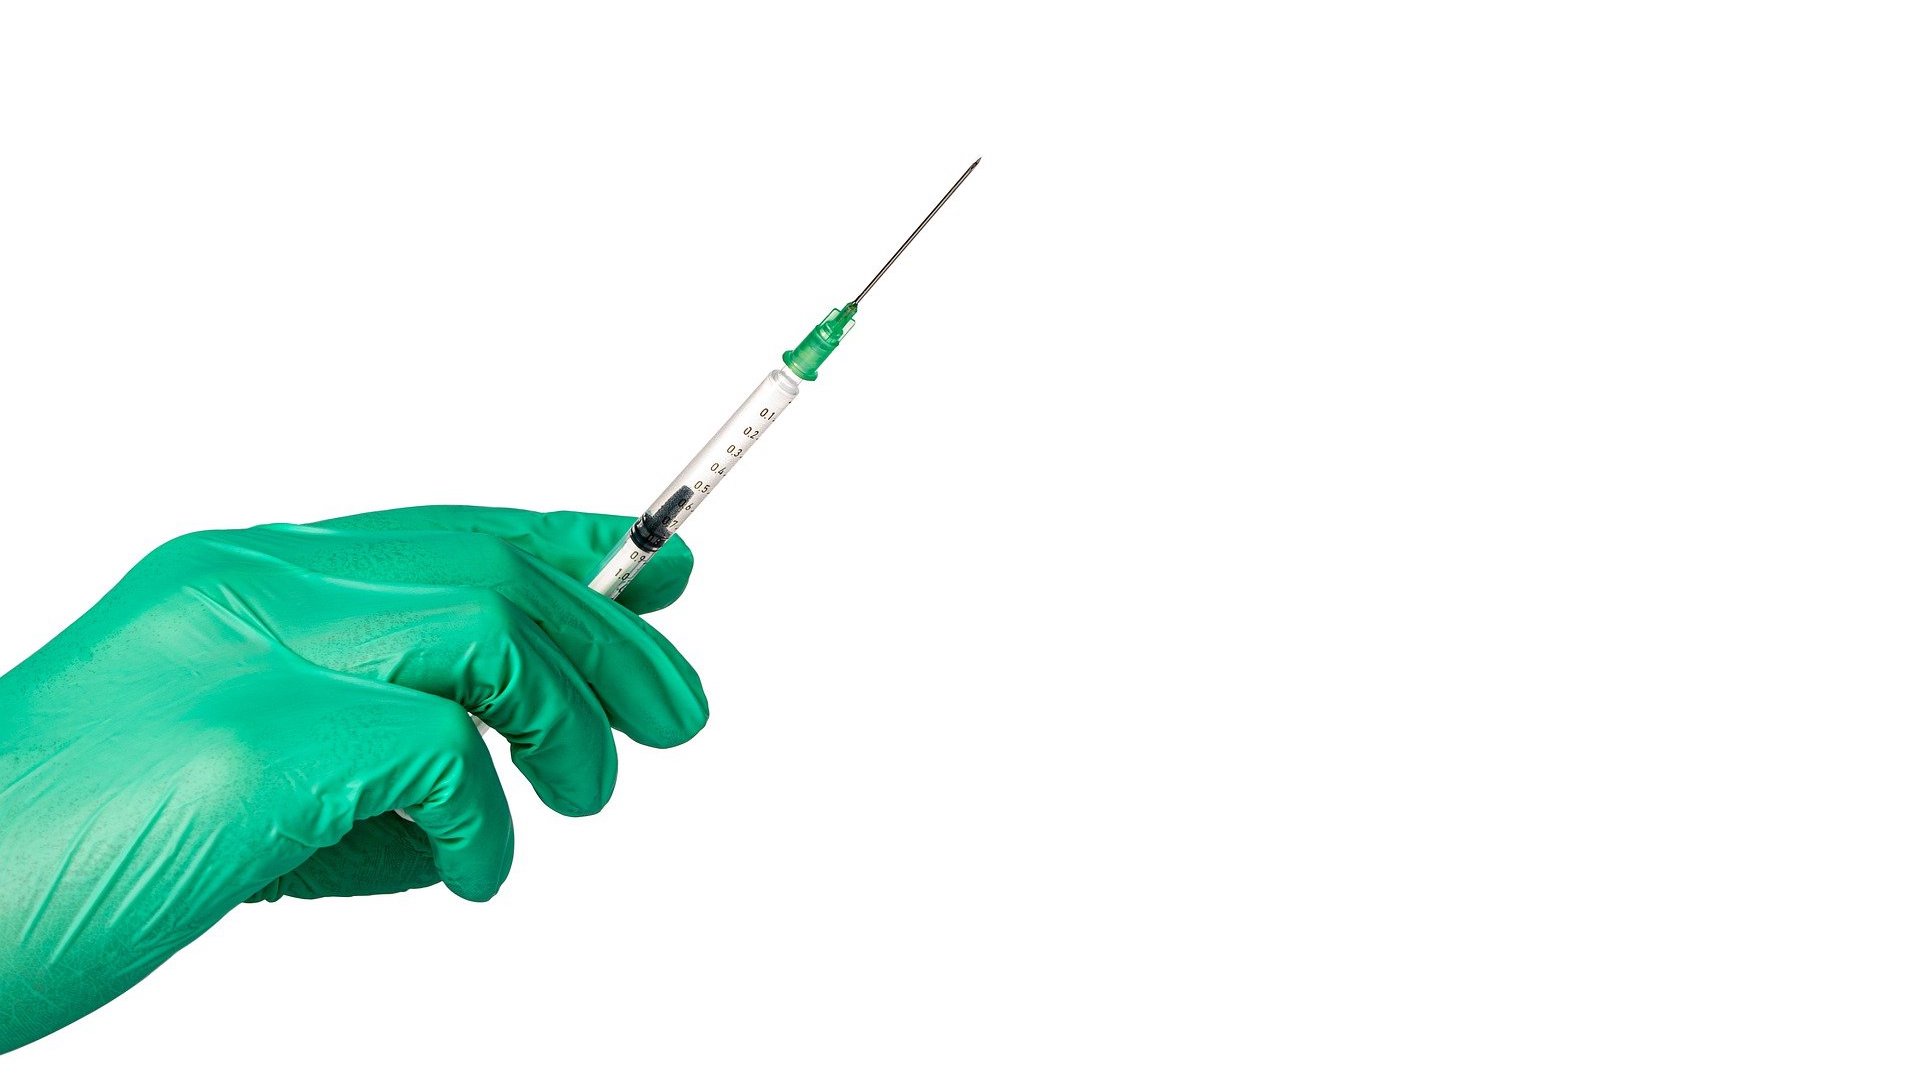 Le vaccin convoitise des pirates depuis le début de la pandémie. // Source :  CCO/Gedesby1989 de Pixabay